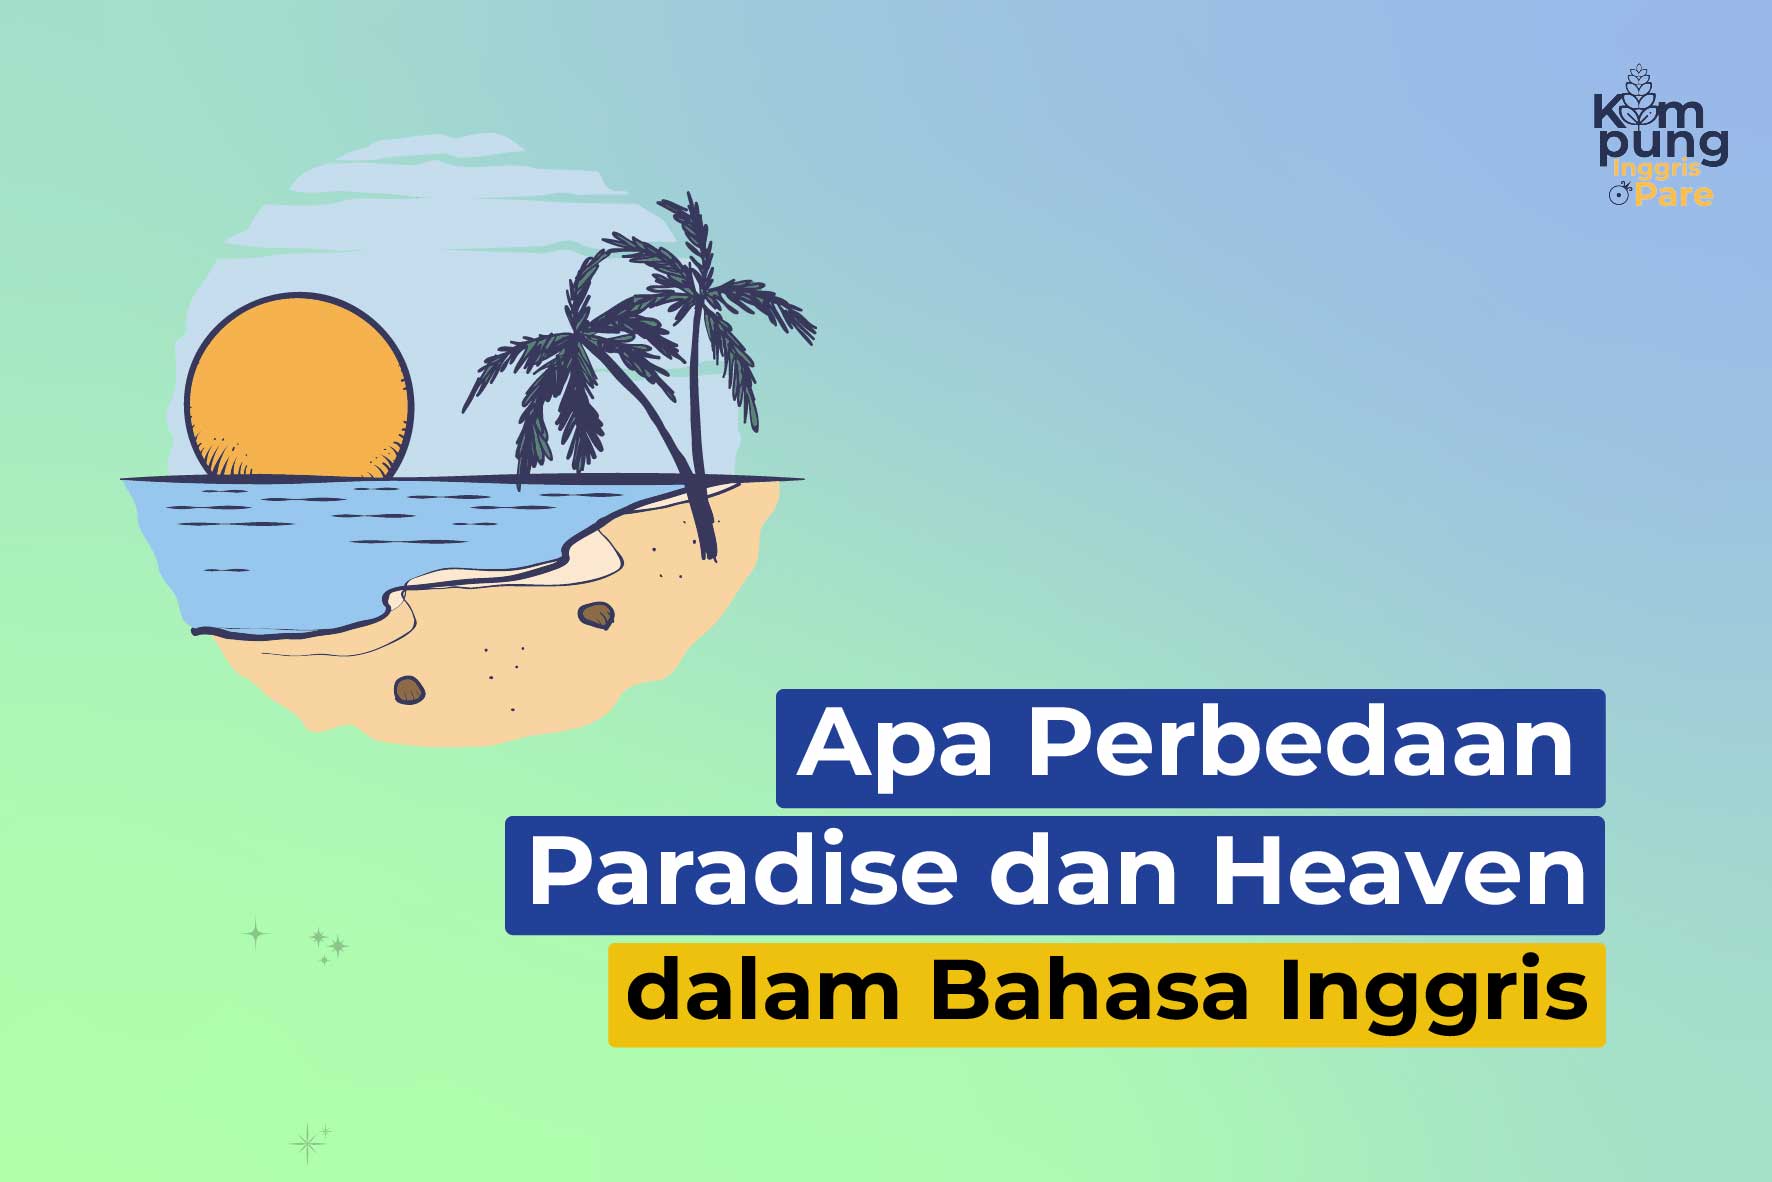 perbedaan paradise dan heaven